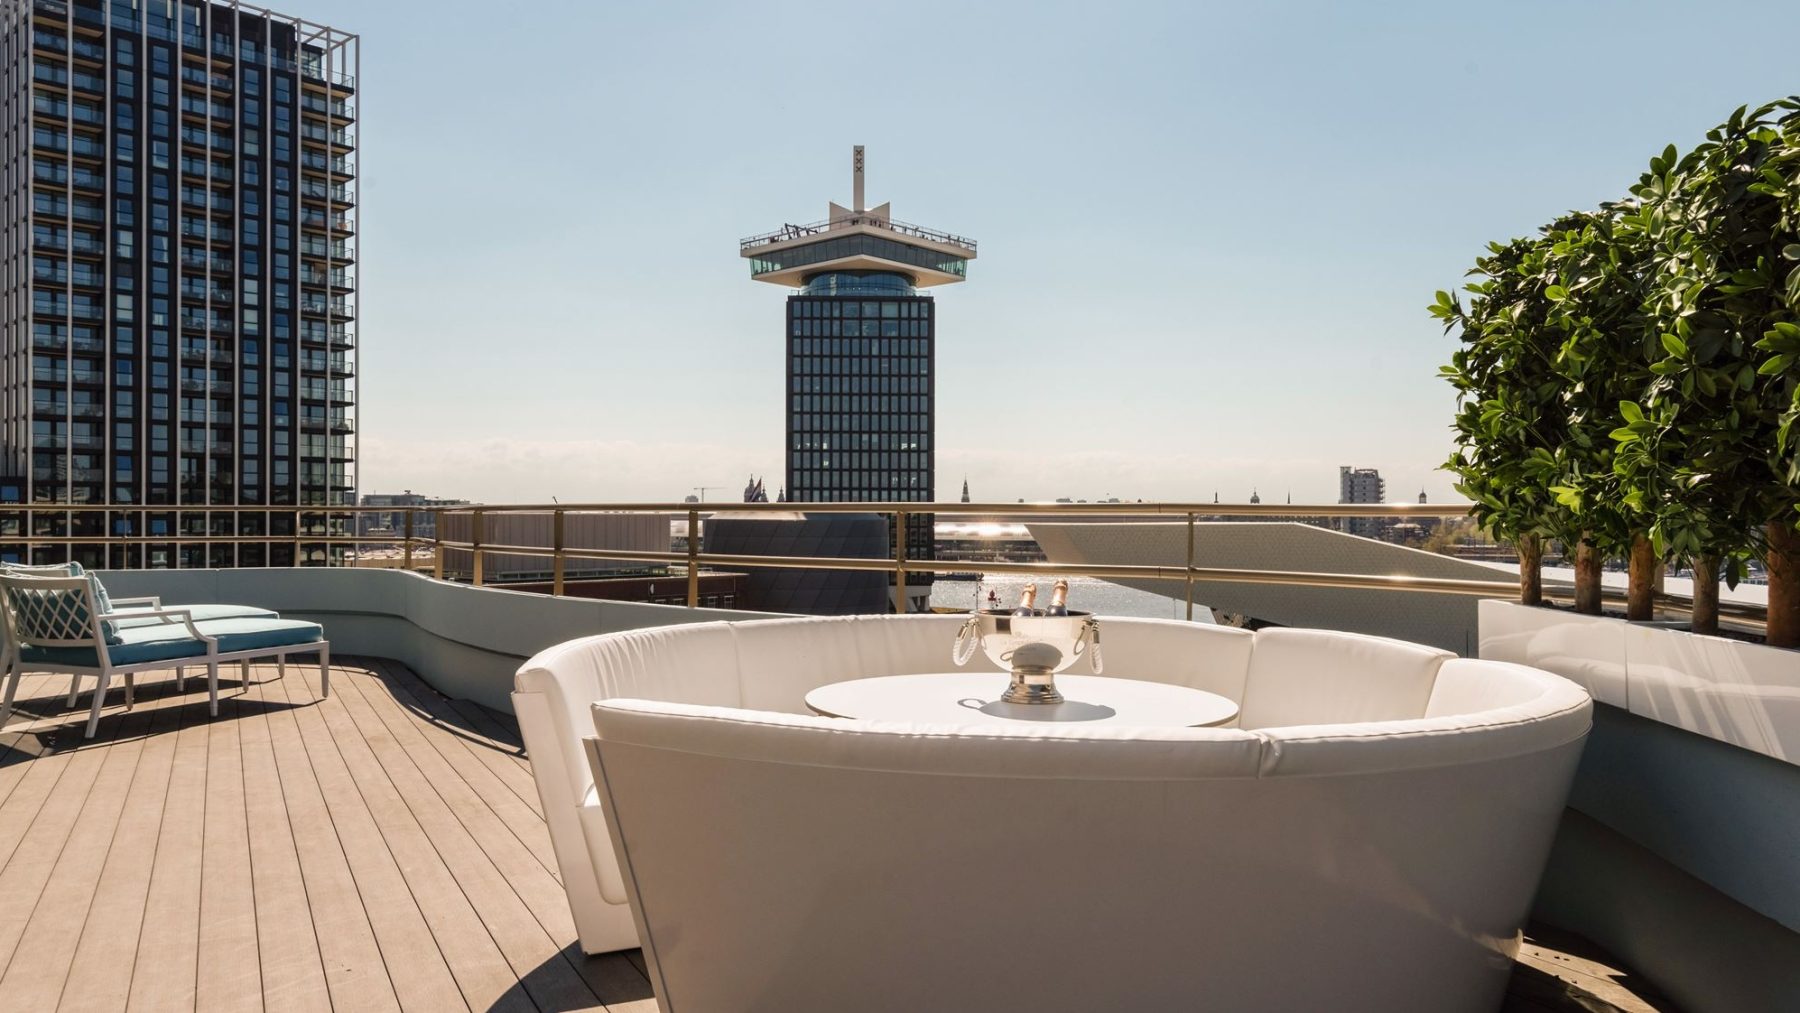 Dit penthouse van 3,5 miljoen in Amsterdam 'krijg' je inclusief alle meubels